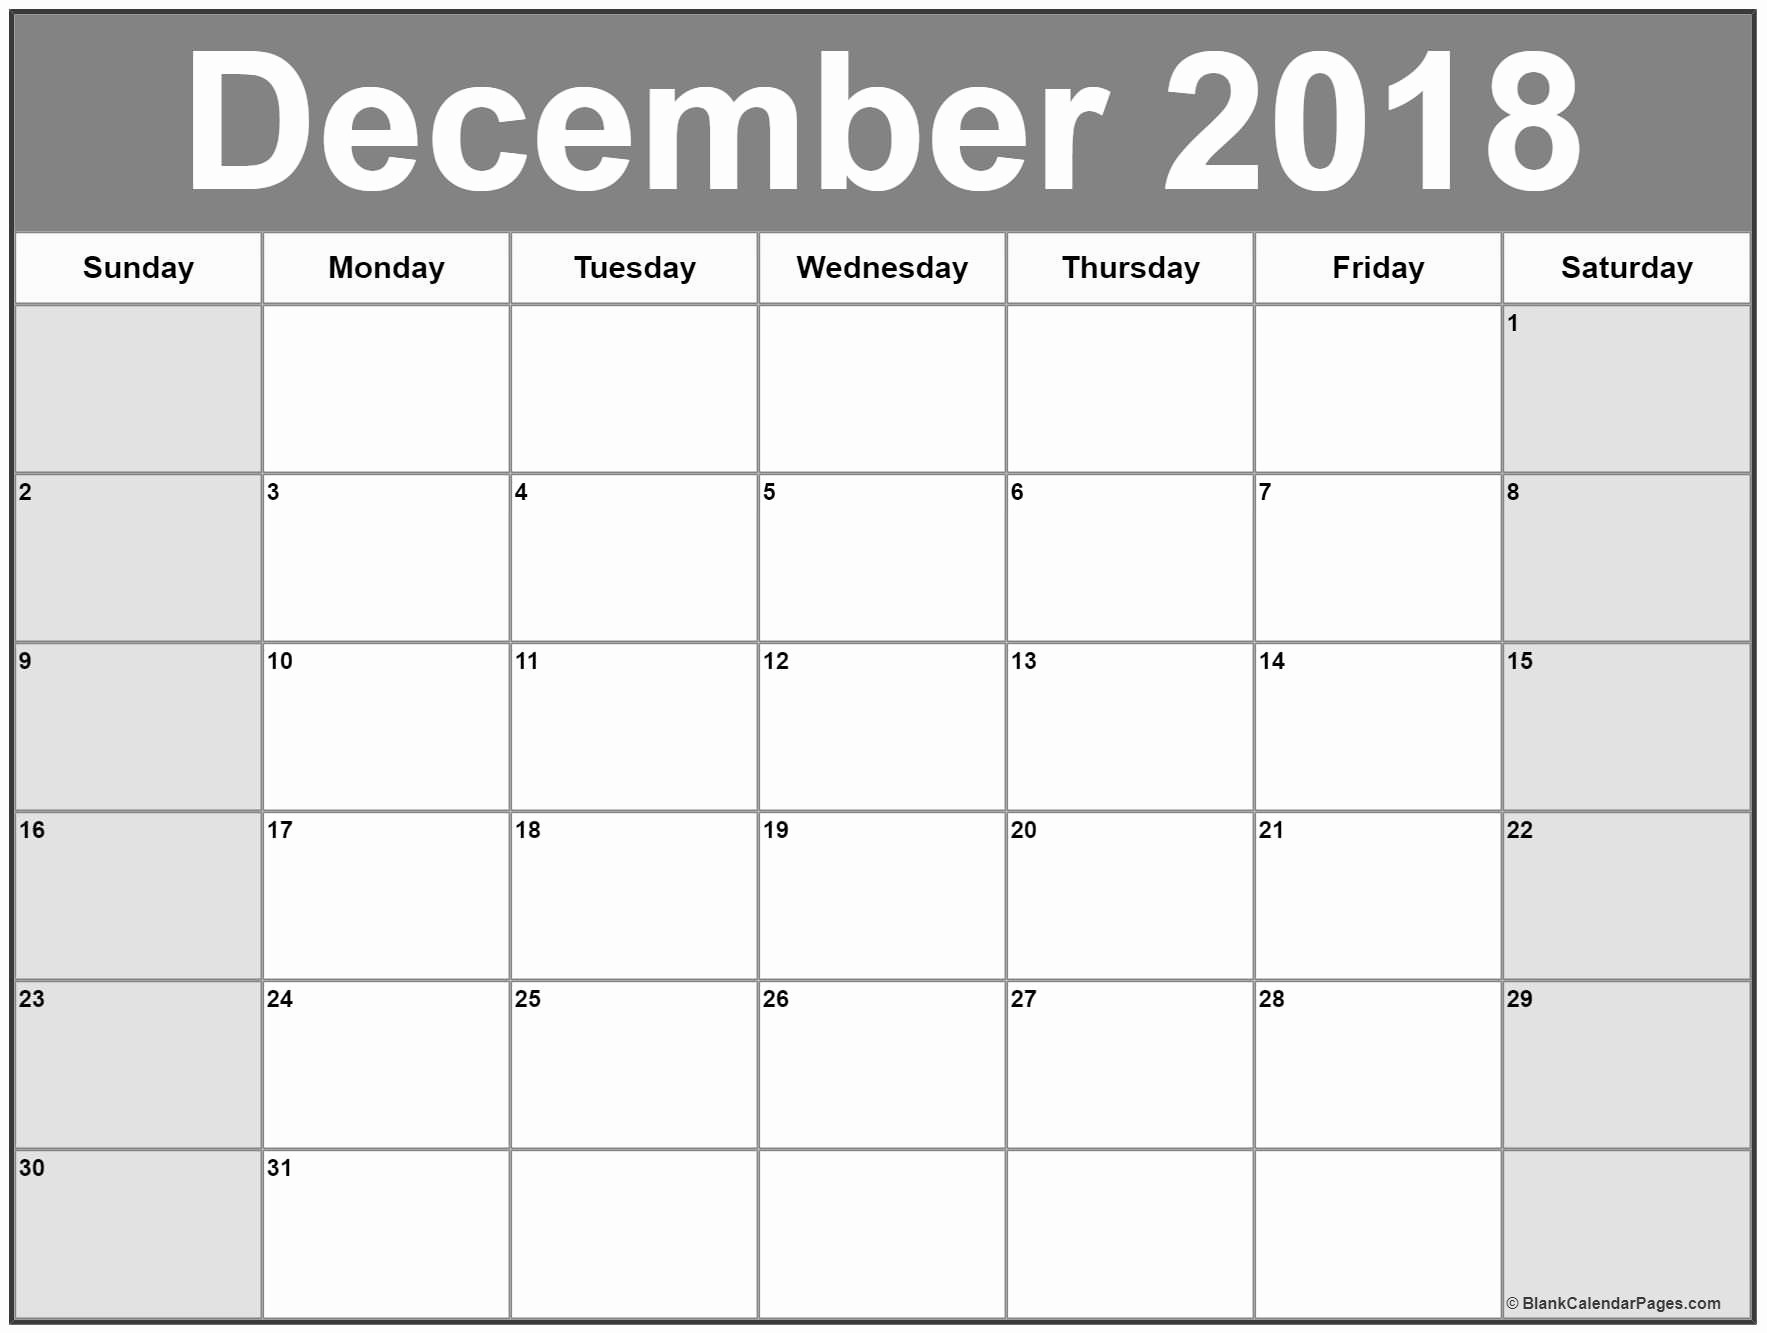 Blank Calendar Template December 2018 Beautiful December 2018 Calendar